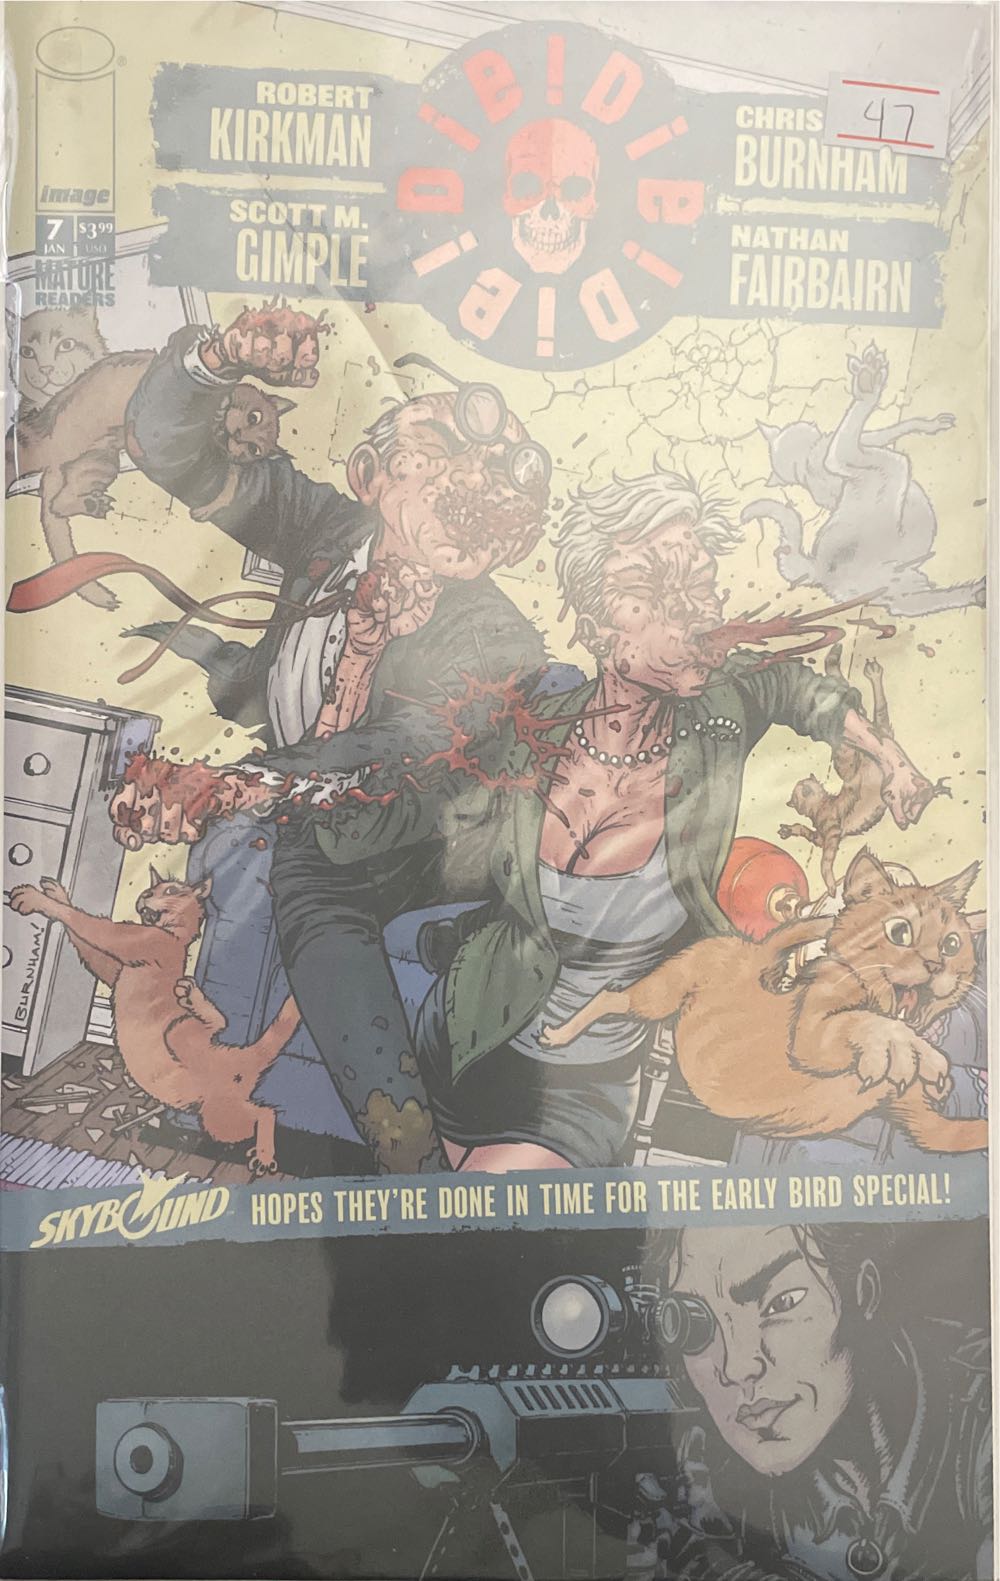 Die!Die!Die! - Image Comics, Inc. (7 - Jan 2019) comic book collectible [Barcode 70985302658700711] - Main Image 1